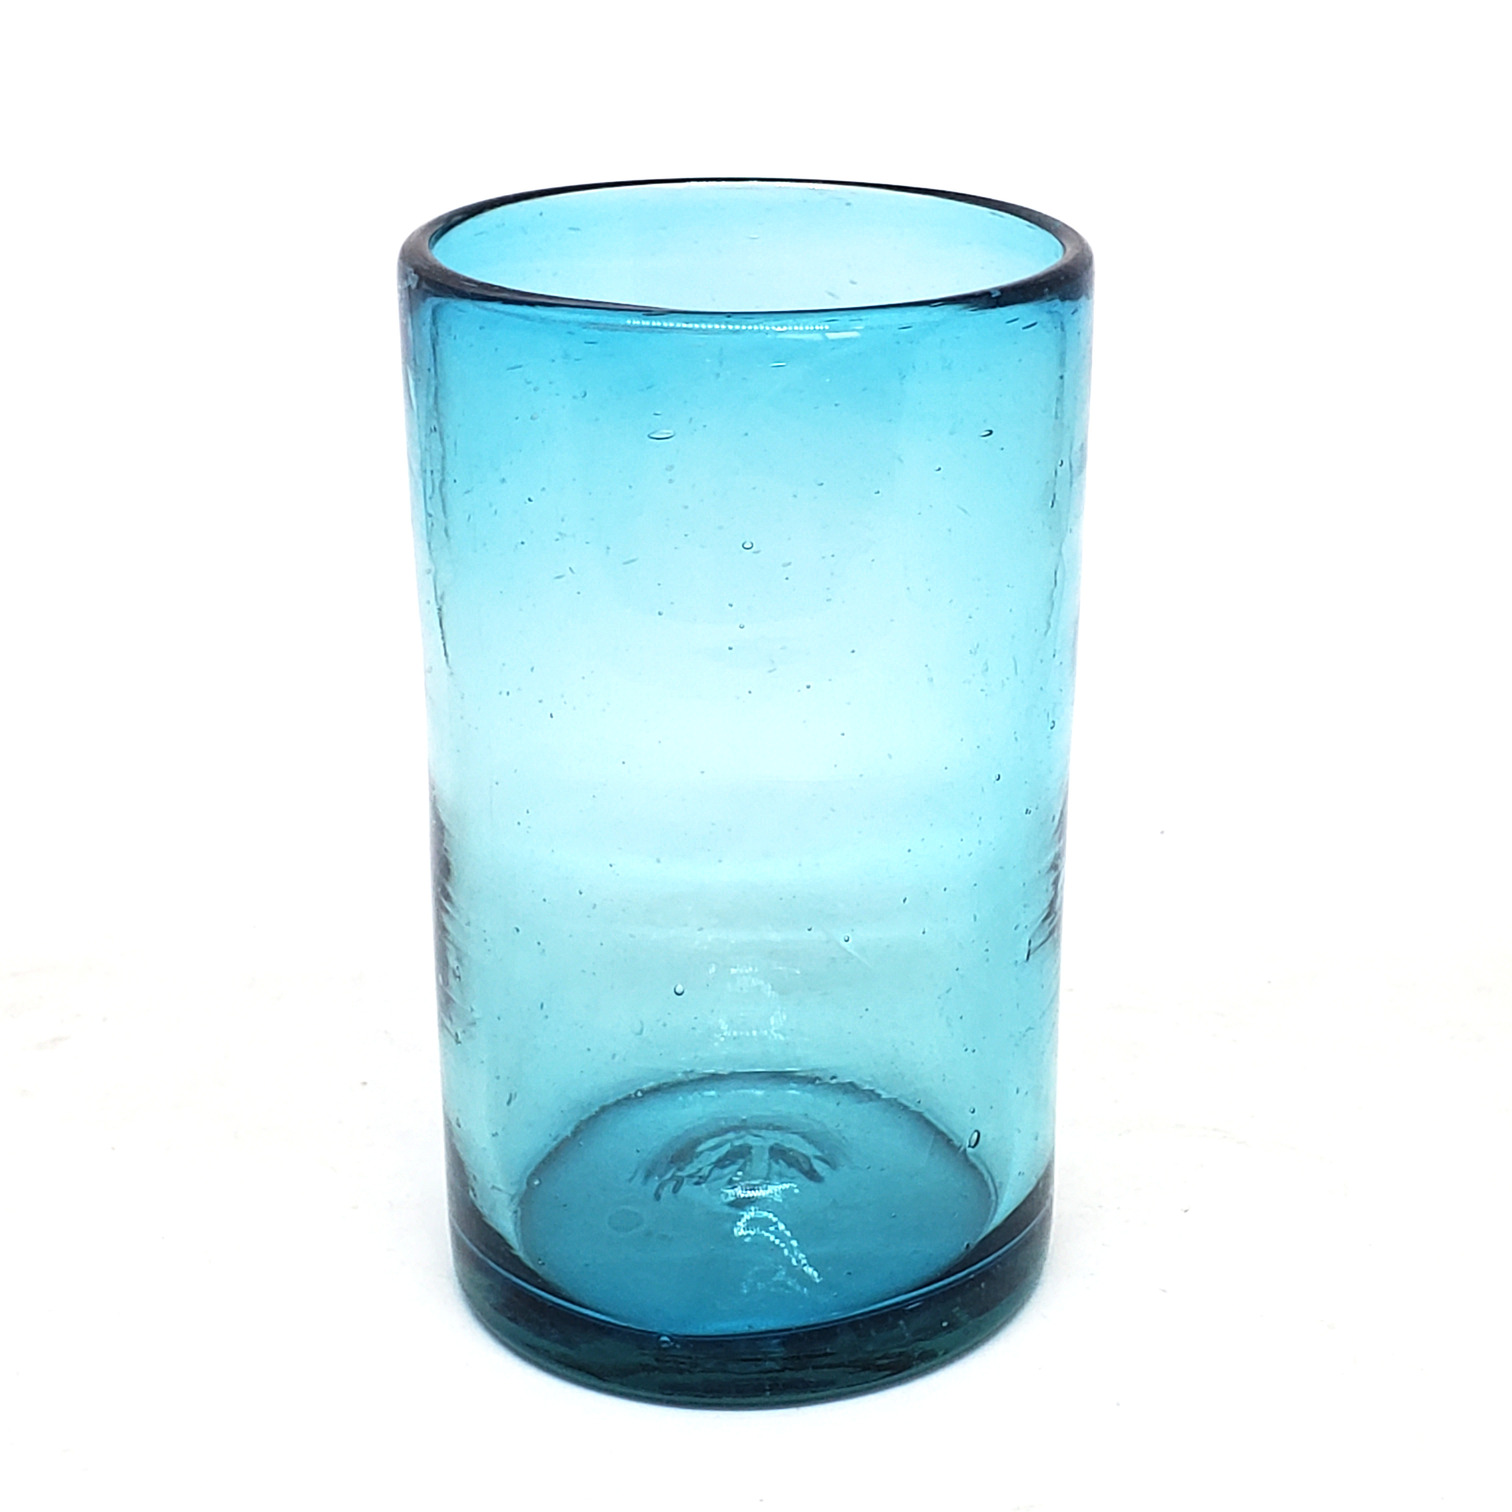 Vasos de Vidrio Soplado / Juego de 6 vasos grandes color azul aqua / Éstos artesanales vasos le darán un toque clásico a su bebida favorita.